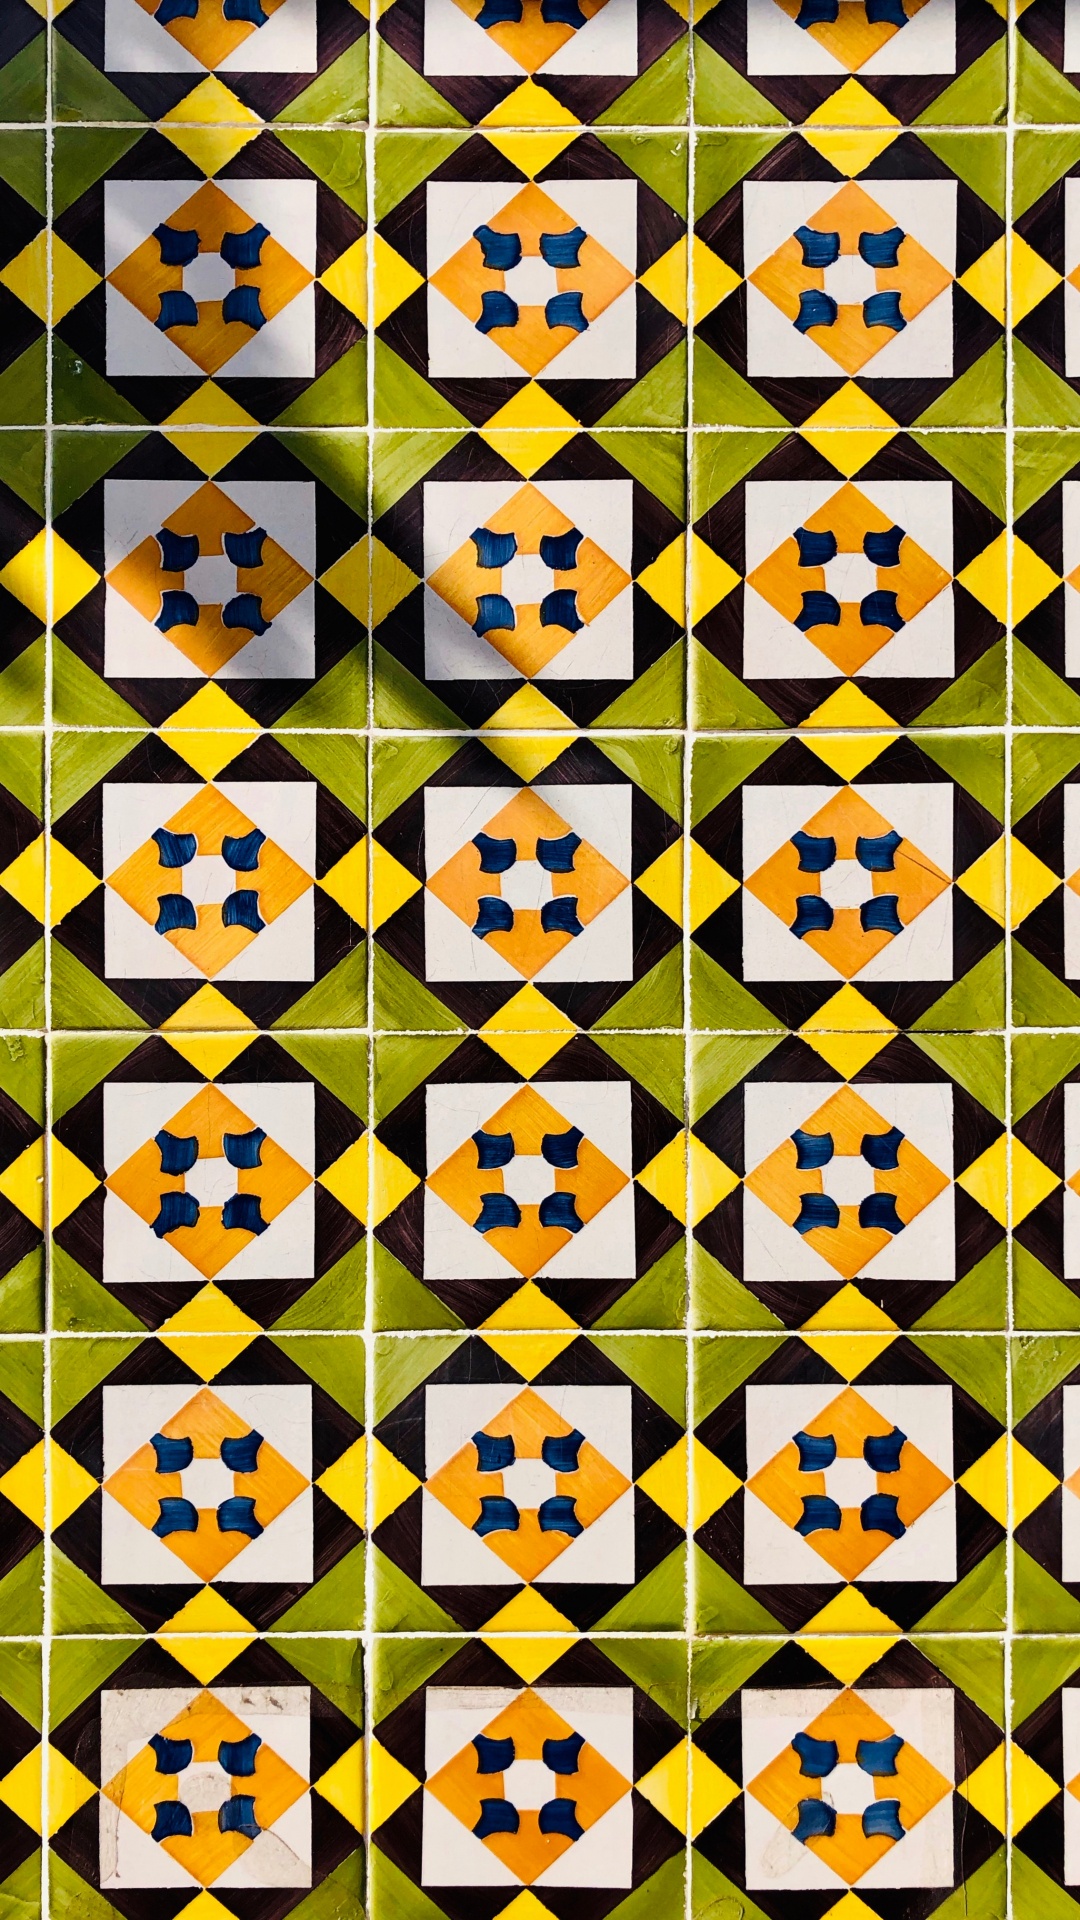 Schwarz-weiß Kariertes Muster. Wallpaper in 1080x1920 Resolution